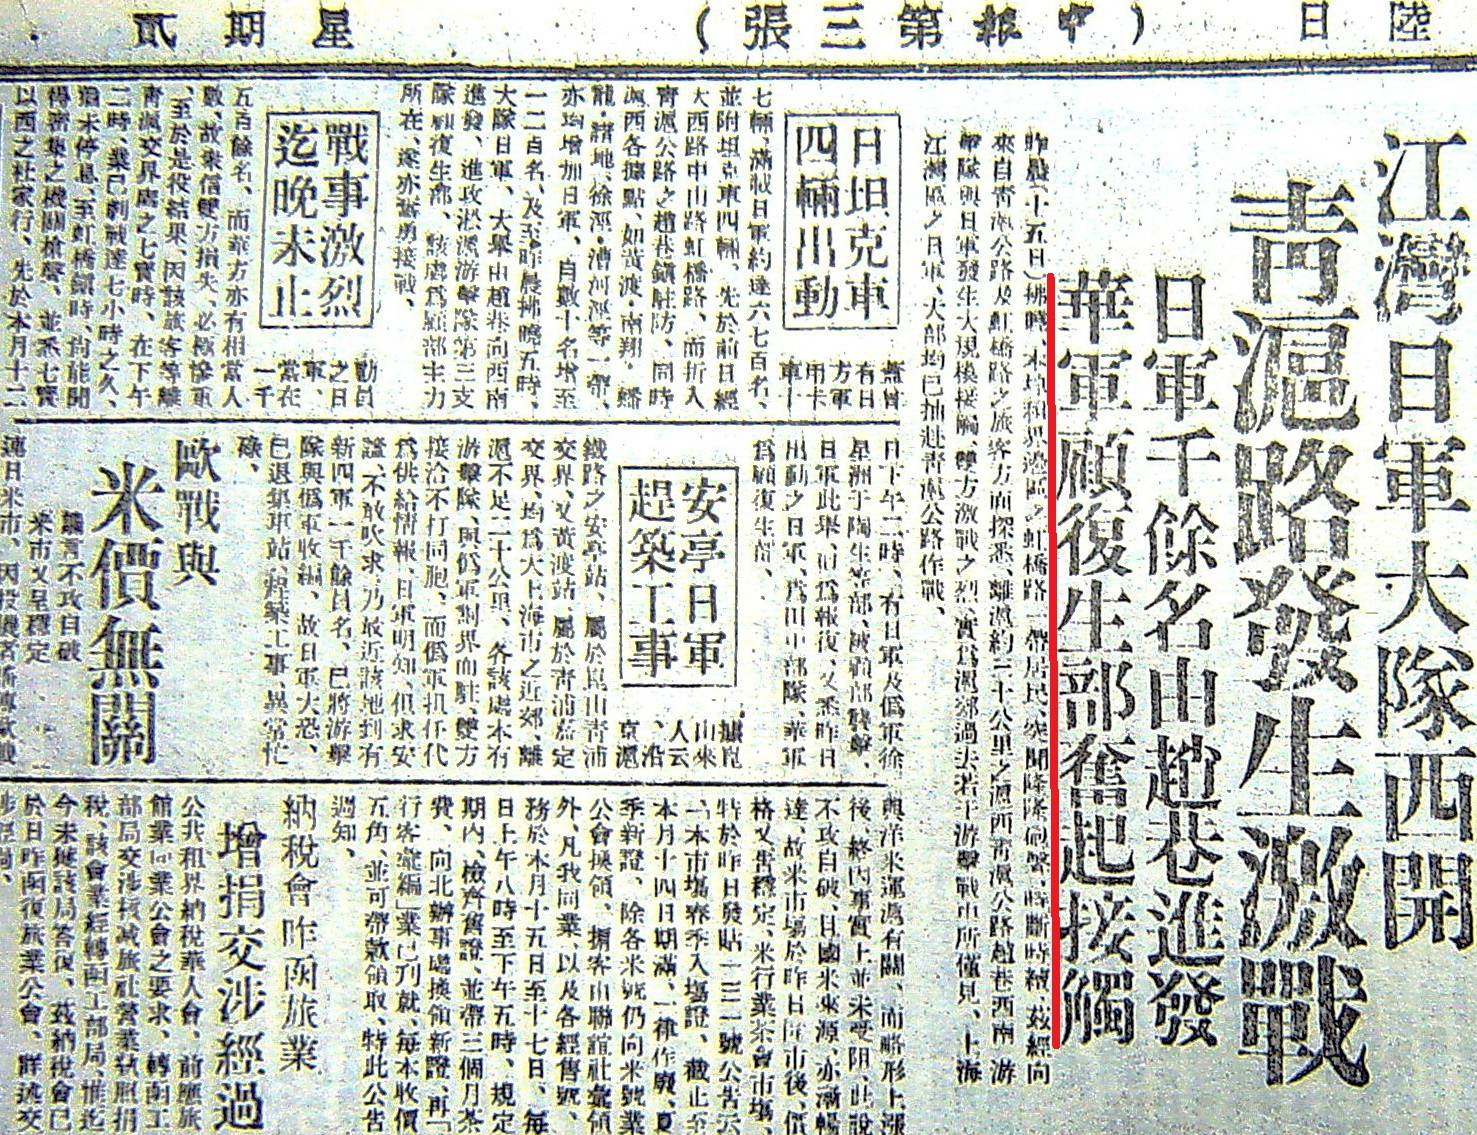 上海《申報》三版頭條對顧復生部的大幅報導